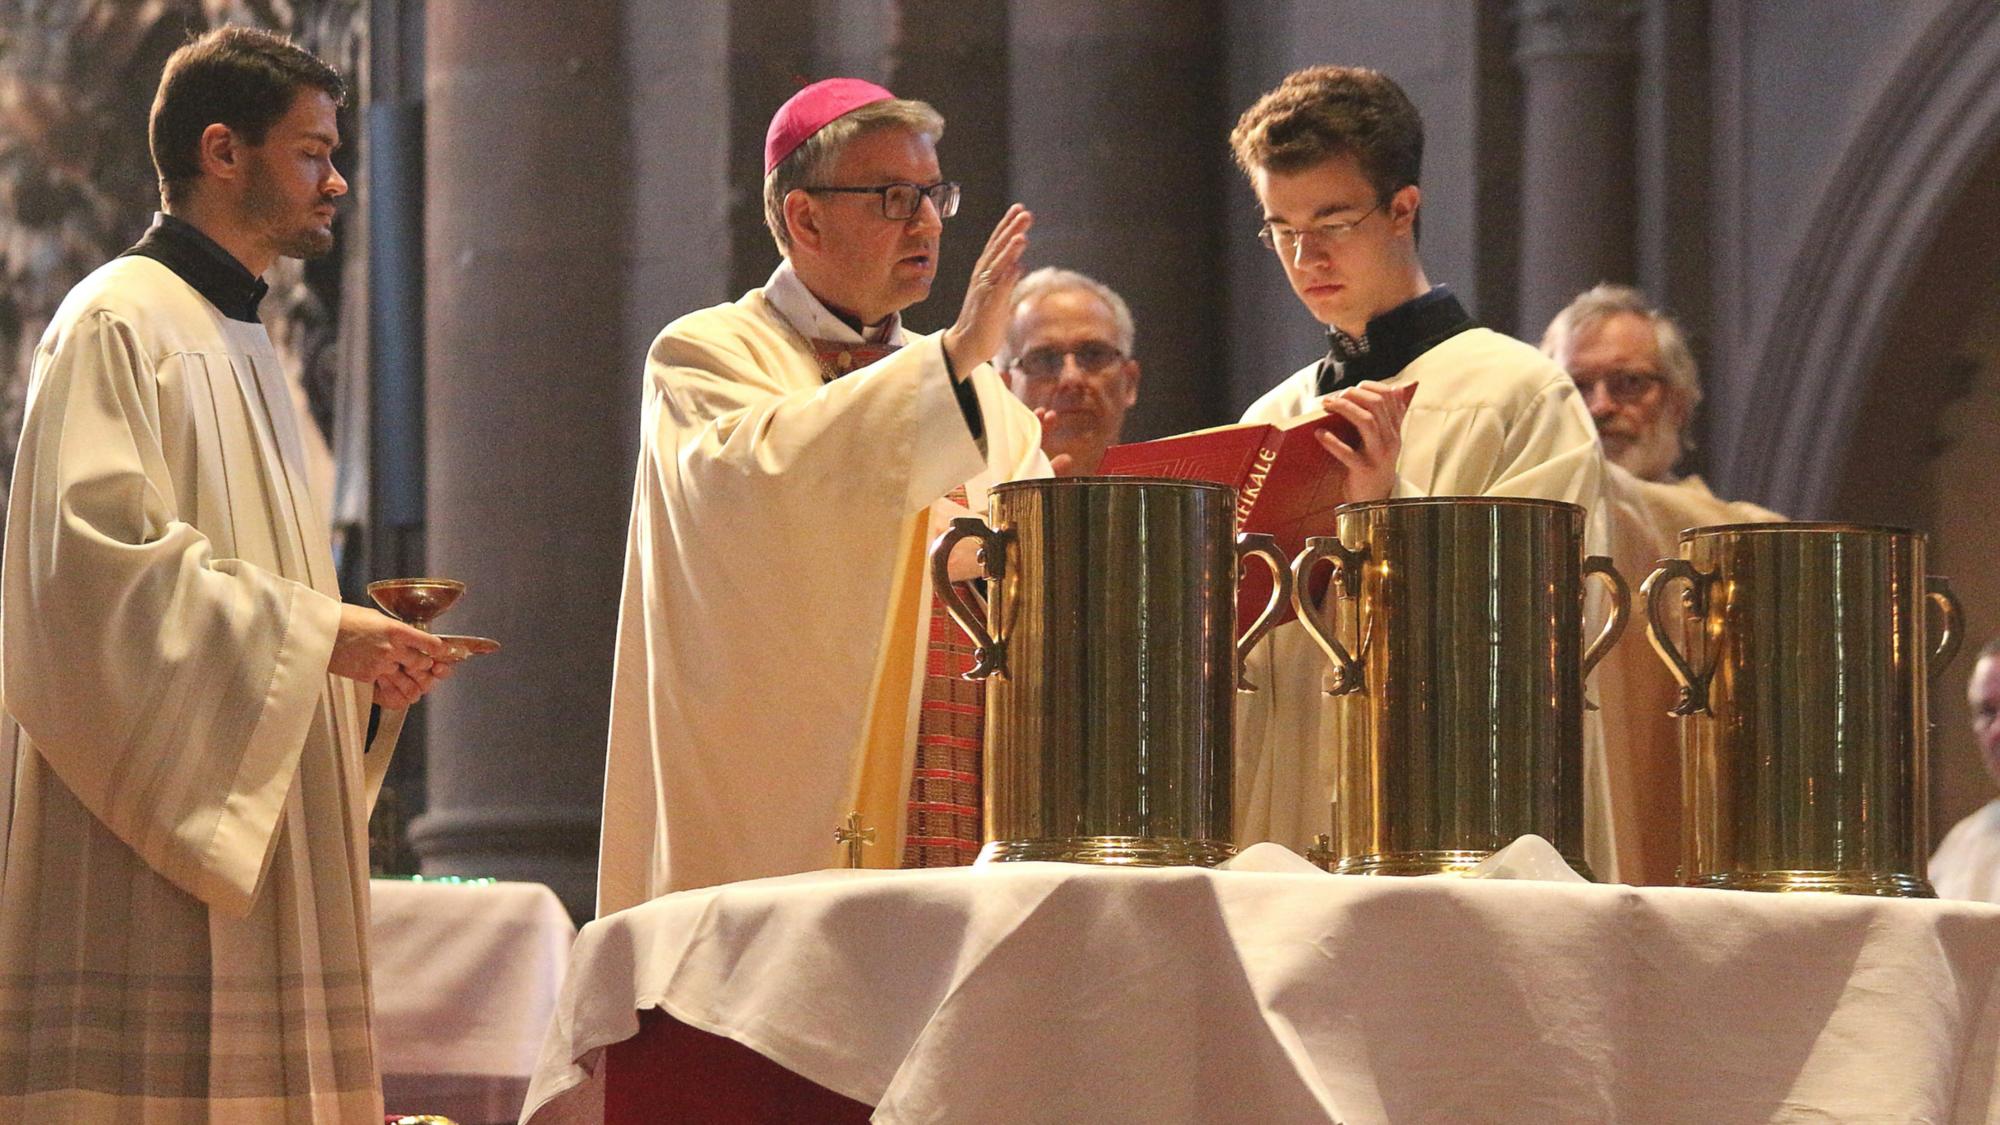 Mainz, 15. April 2019: Bischof Peter Kohlgraf bei der Weihe der Heiligen Öle während der Missa chrismatis im Mainzer Dom.